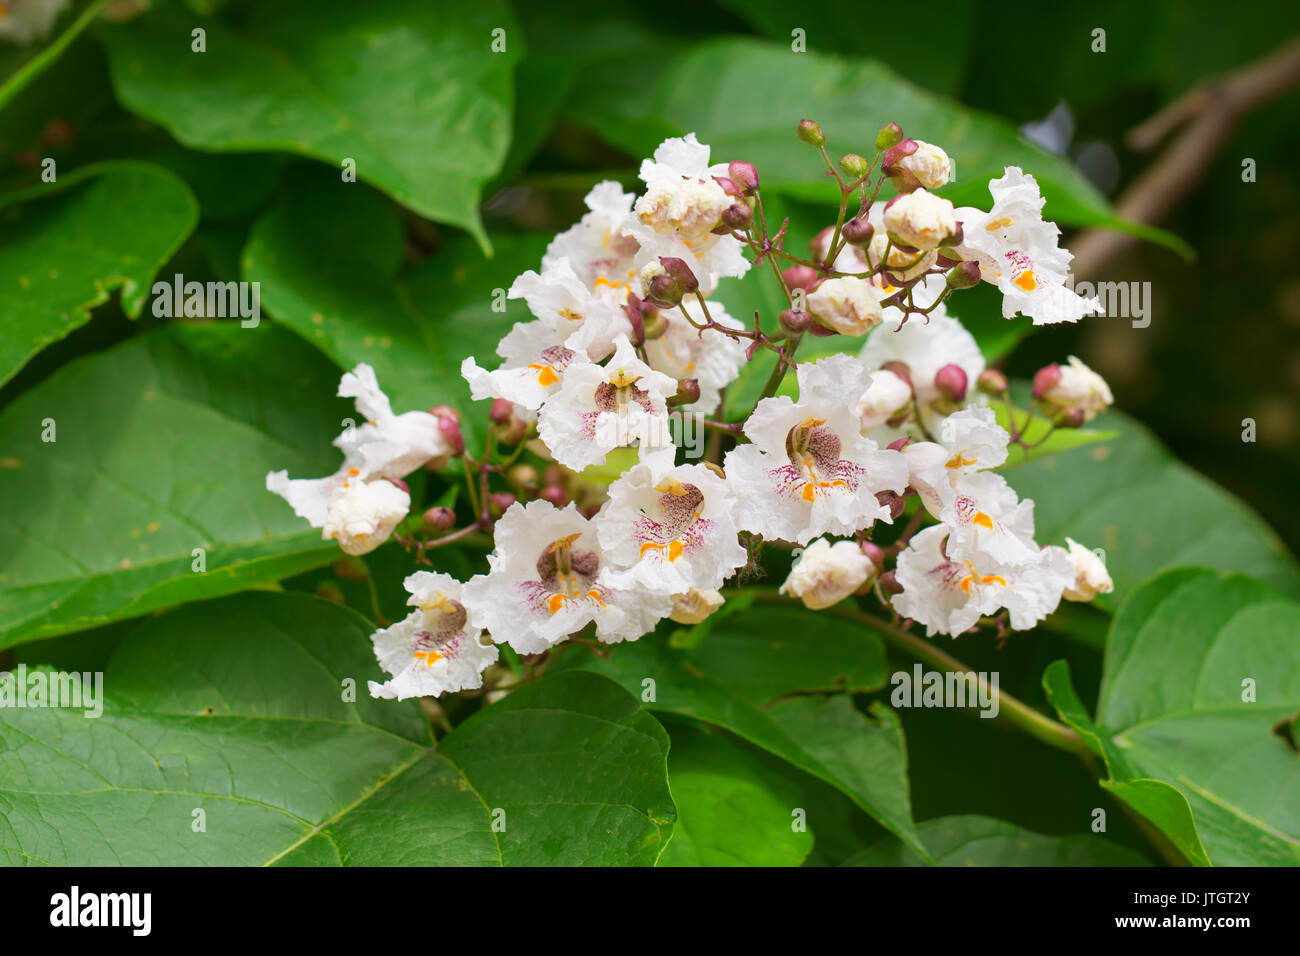 Nahaufnahme der Catalpa tree Blüten im Sommer. Catalpa ist auch als Catawba bekannt und ist in warmen gemäßigten und subtropischen Regionen Nordamerika Stockfoto